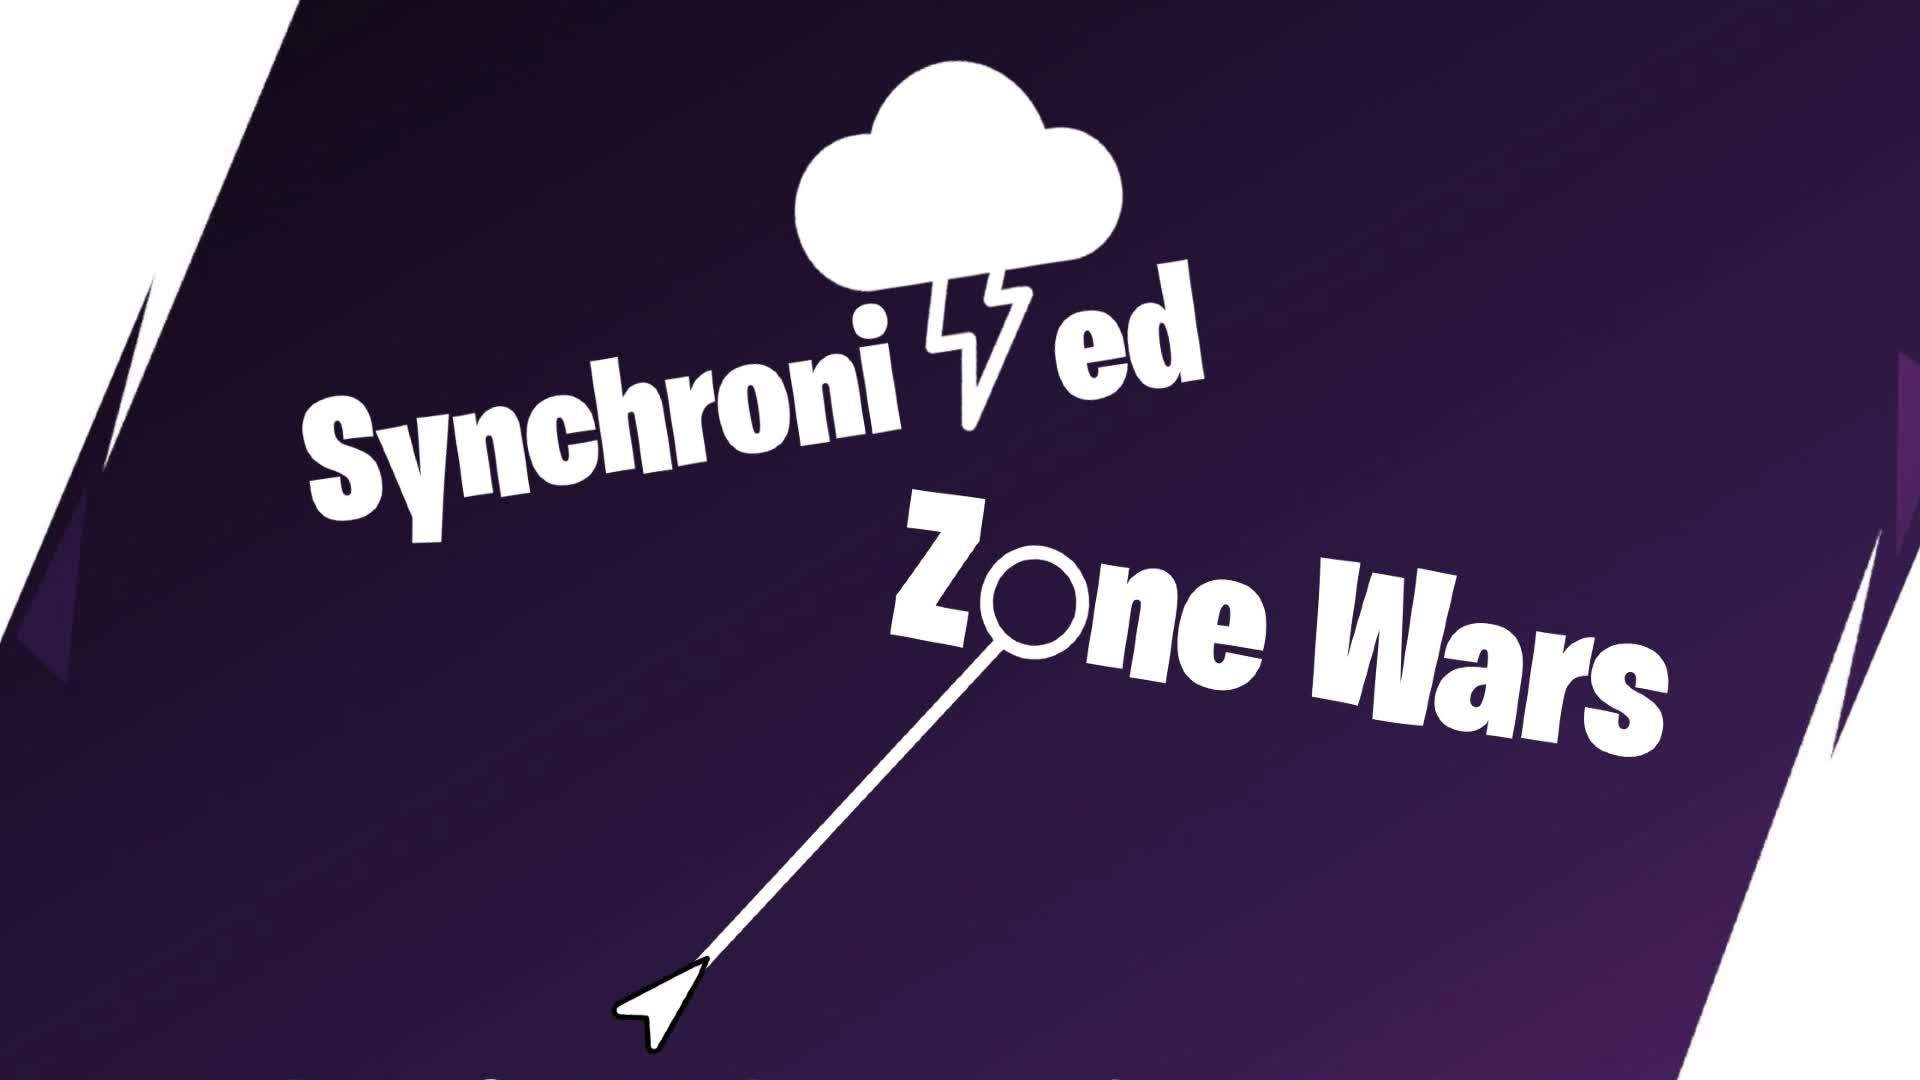 Synchronized Zone Wars